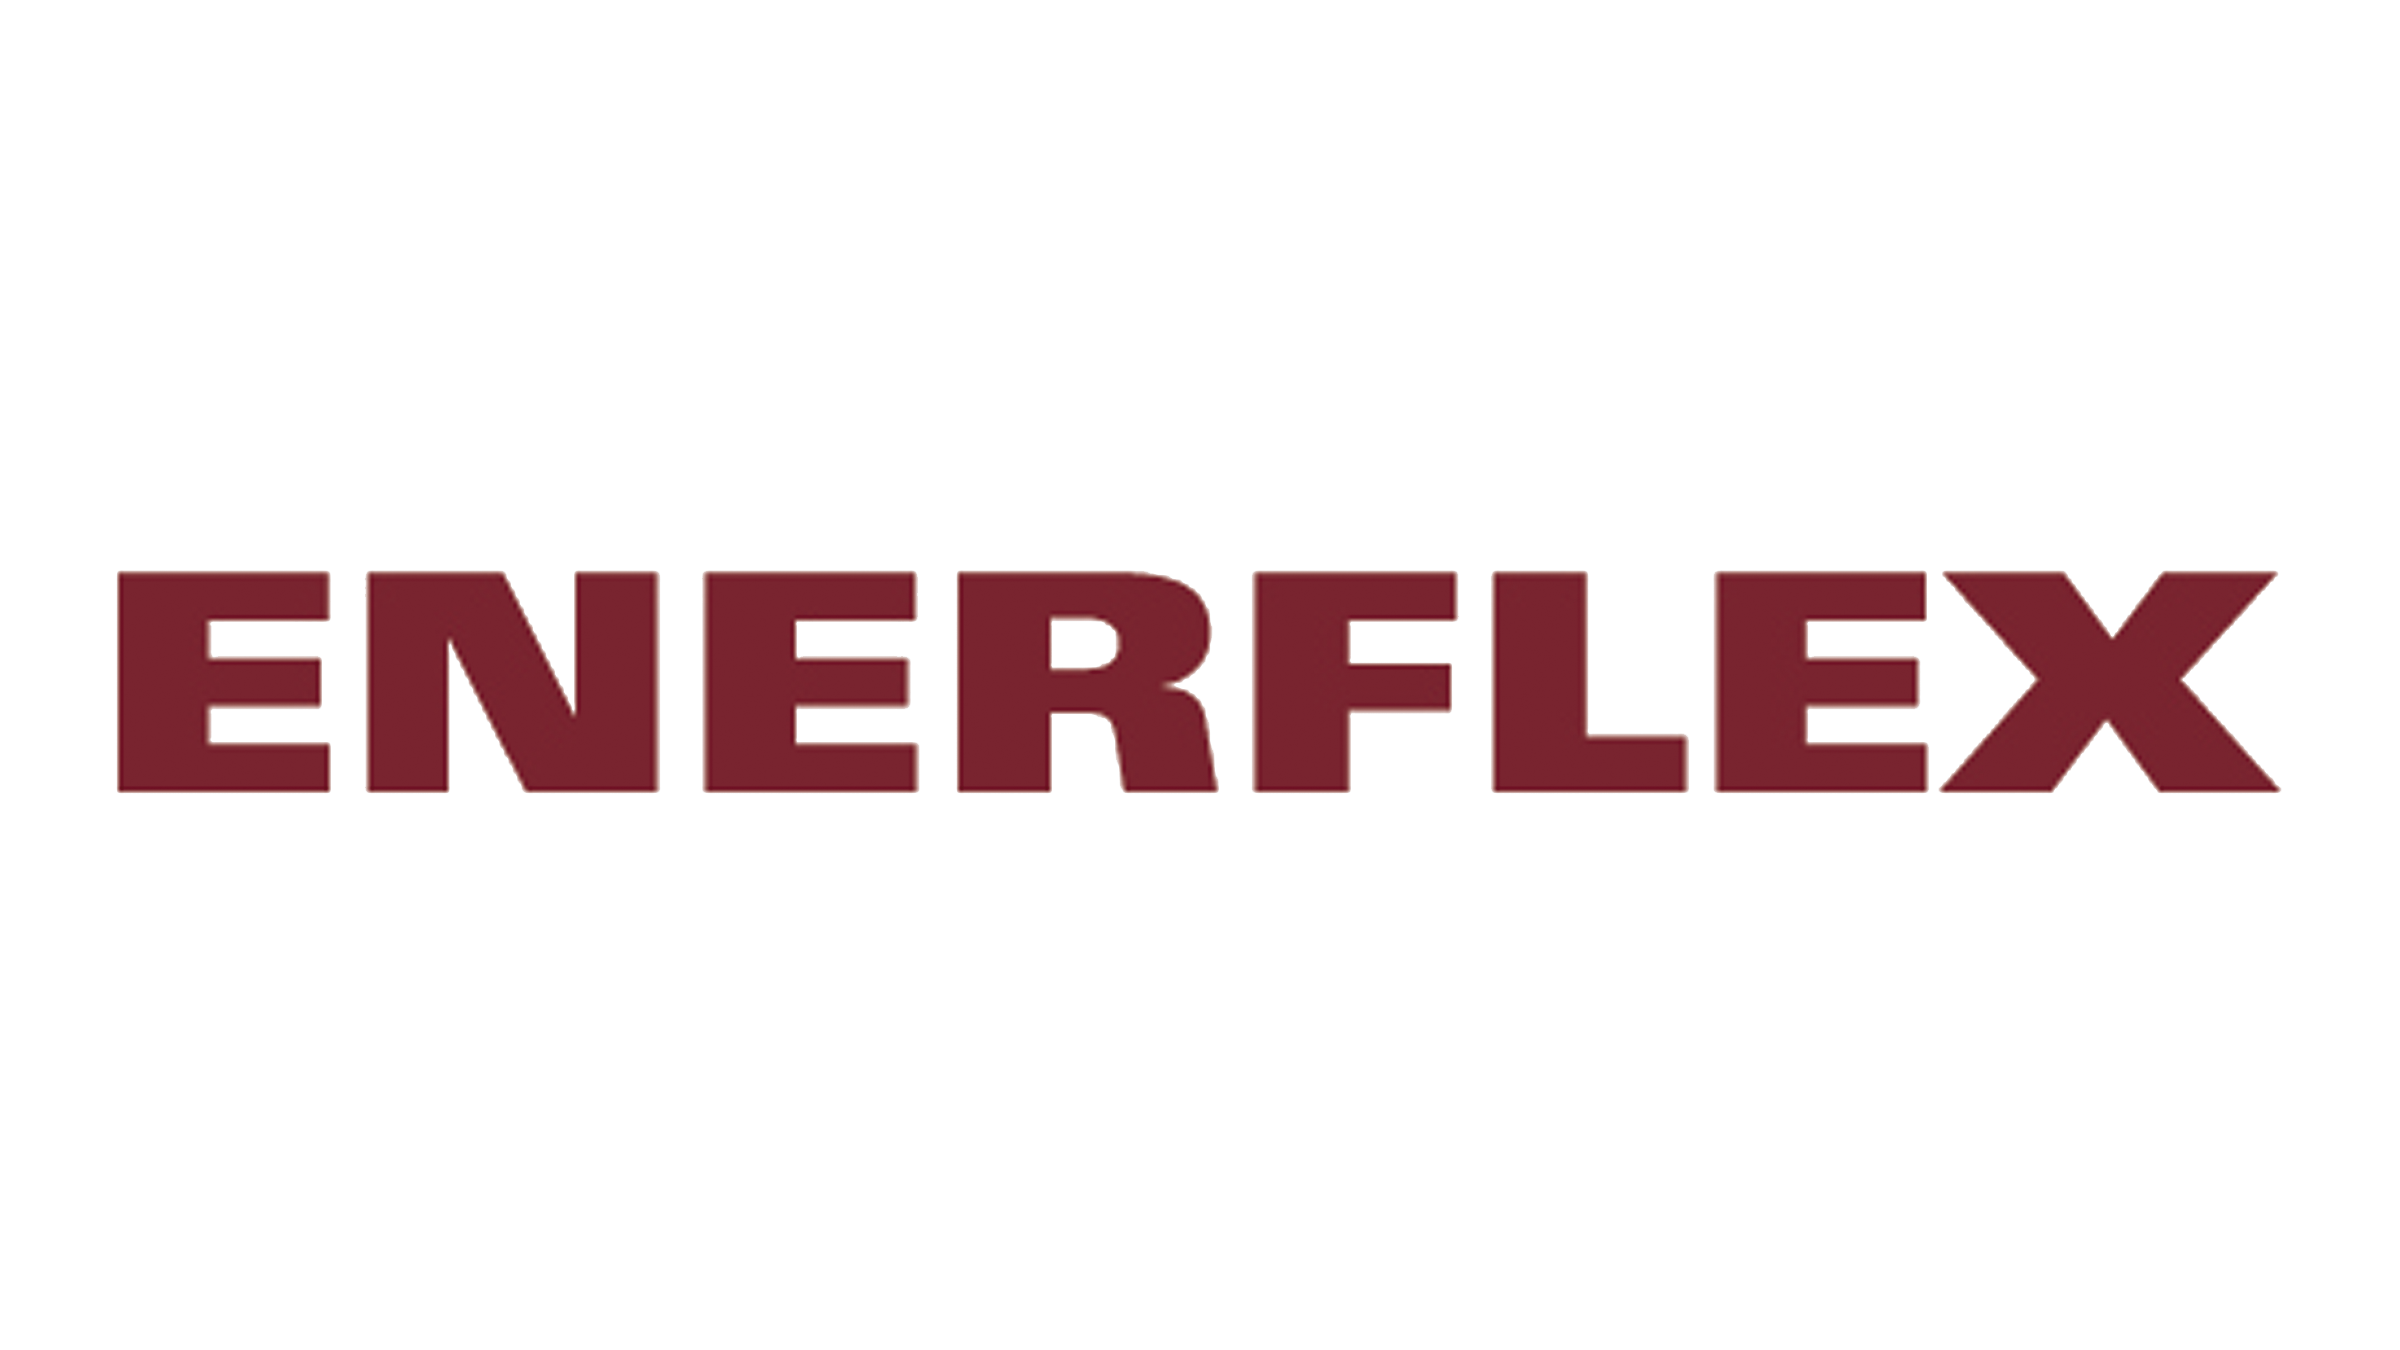 ENERFLEX logo